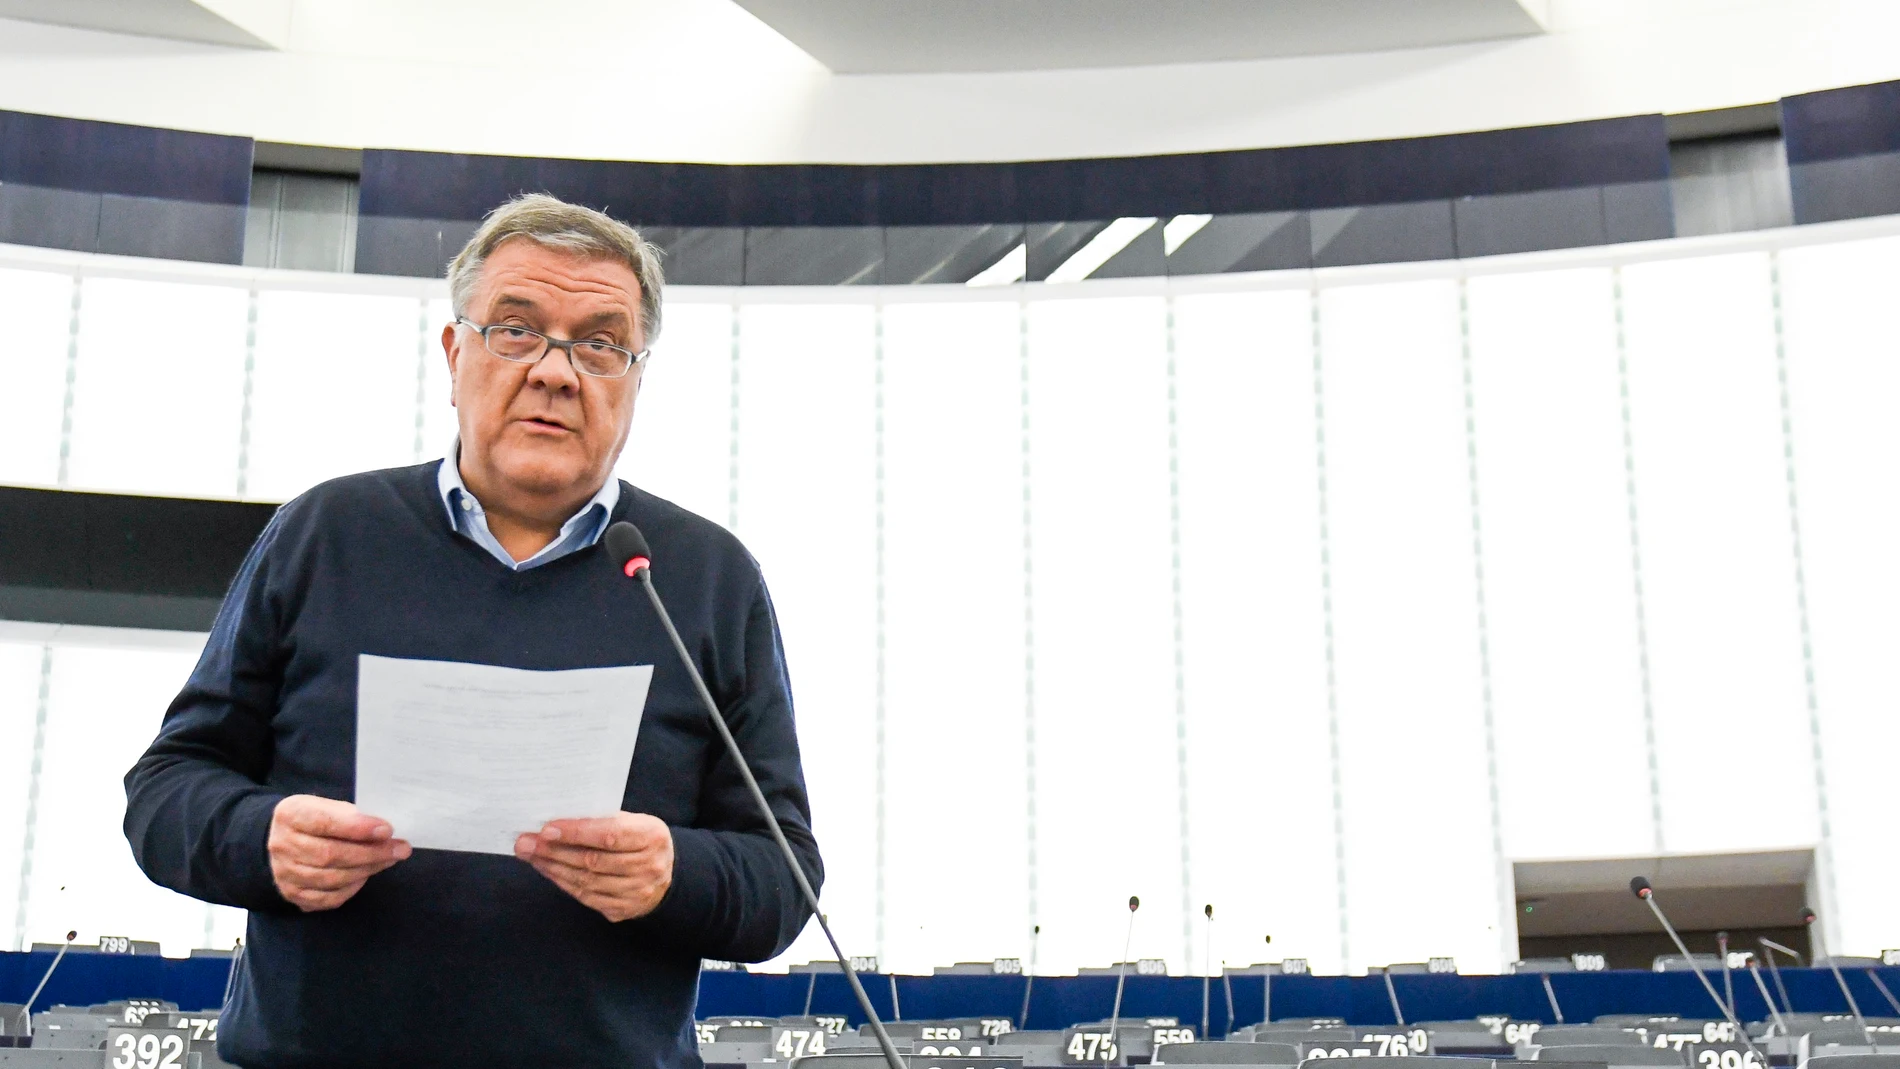 El exeurodiputado socialista Pier Antonio Panzeri durante un pleno, se supone que es el cerebro de la trama del QatargatePARLAMENTO EUROPEO (Foto de ARCHIVO)13/12/2018